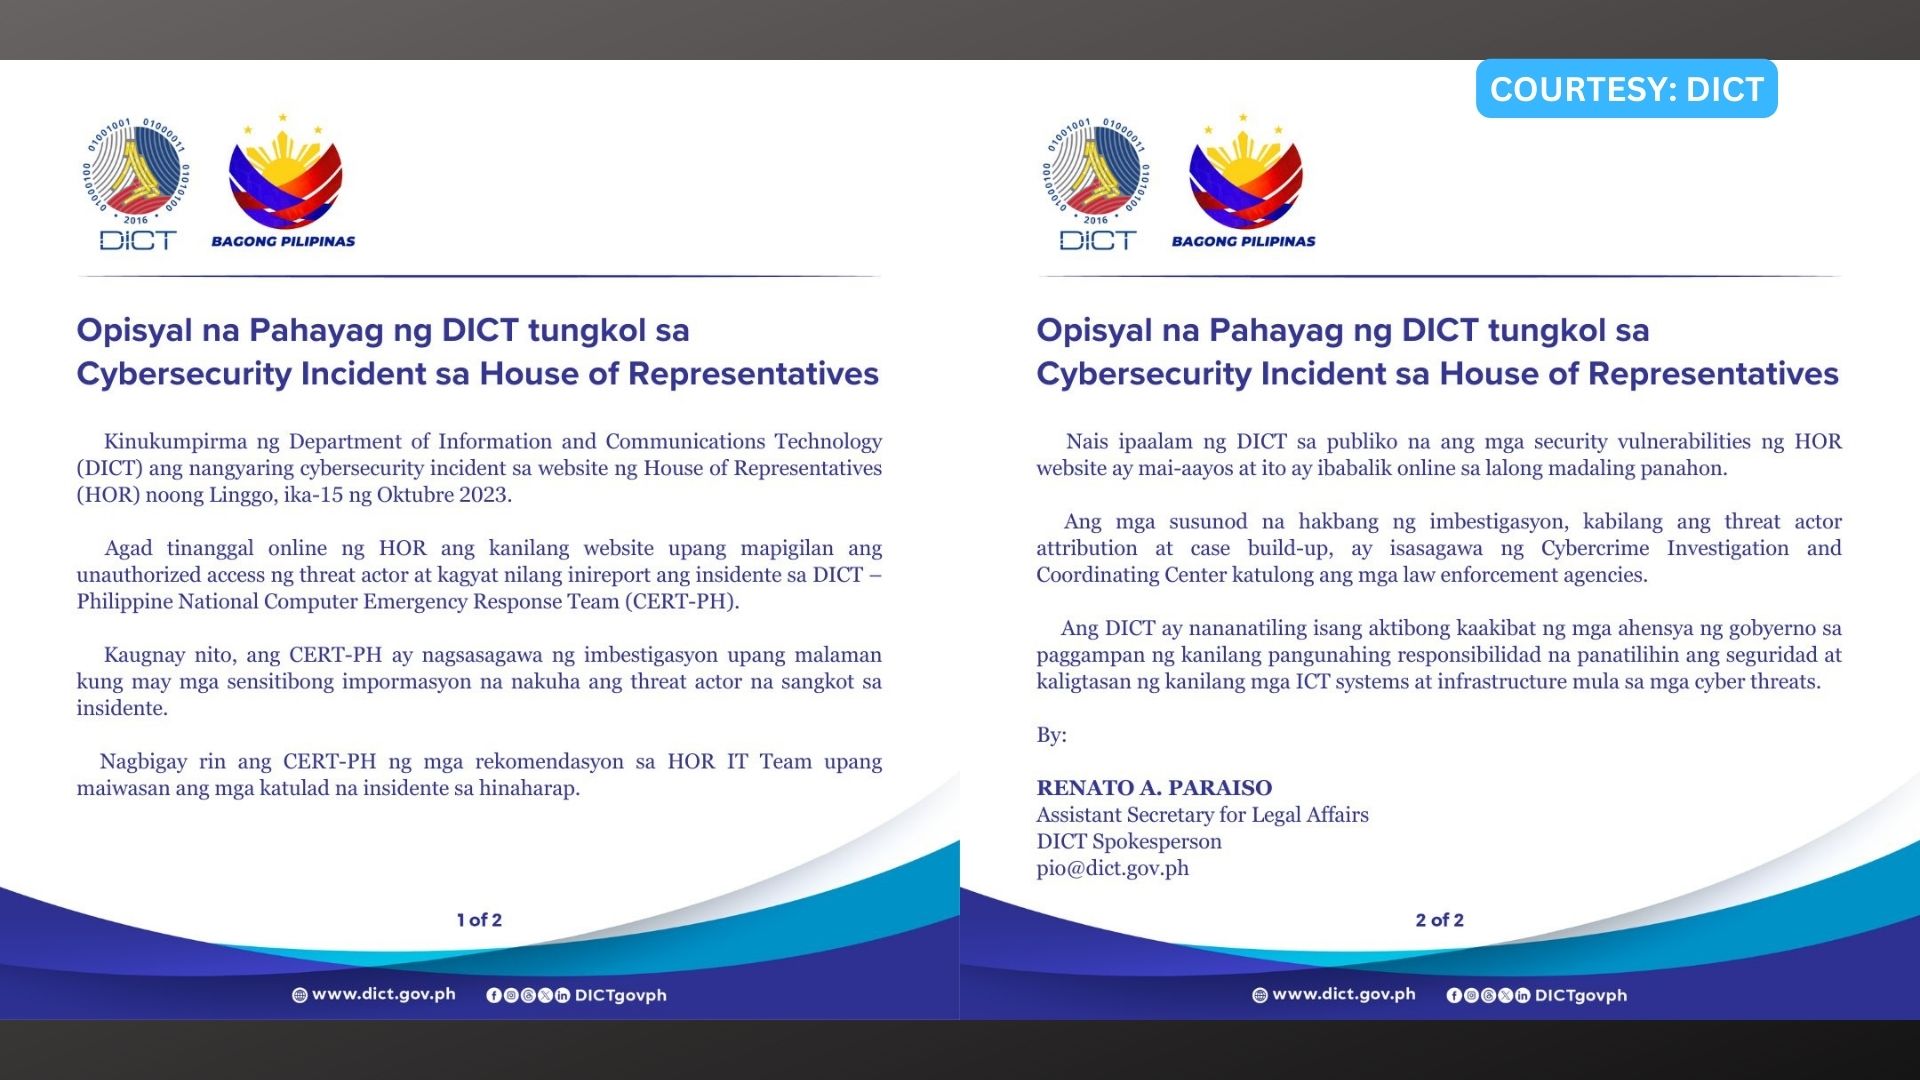 DICT inaalam pa kung may nakompromisong sensitibong impormasyon sa insidente ng hacking sa website ng Kamara